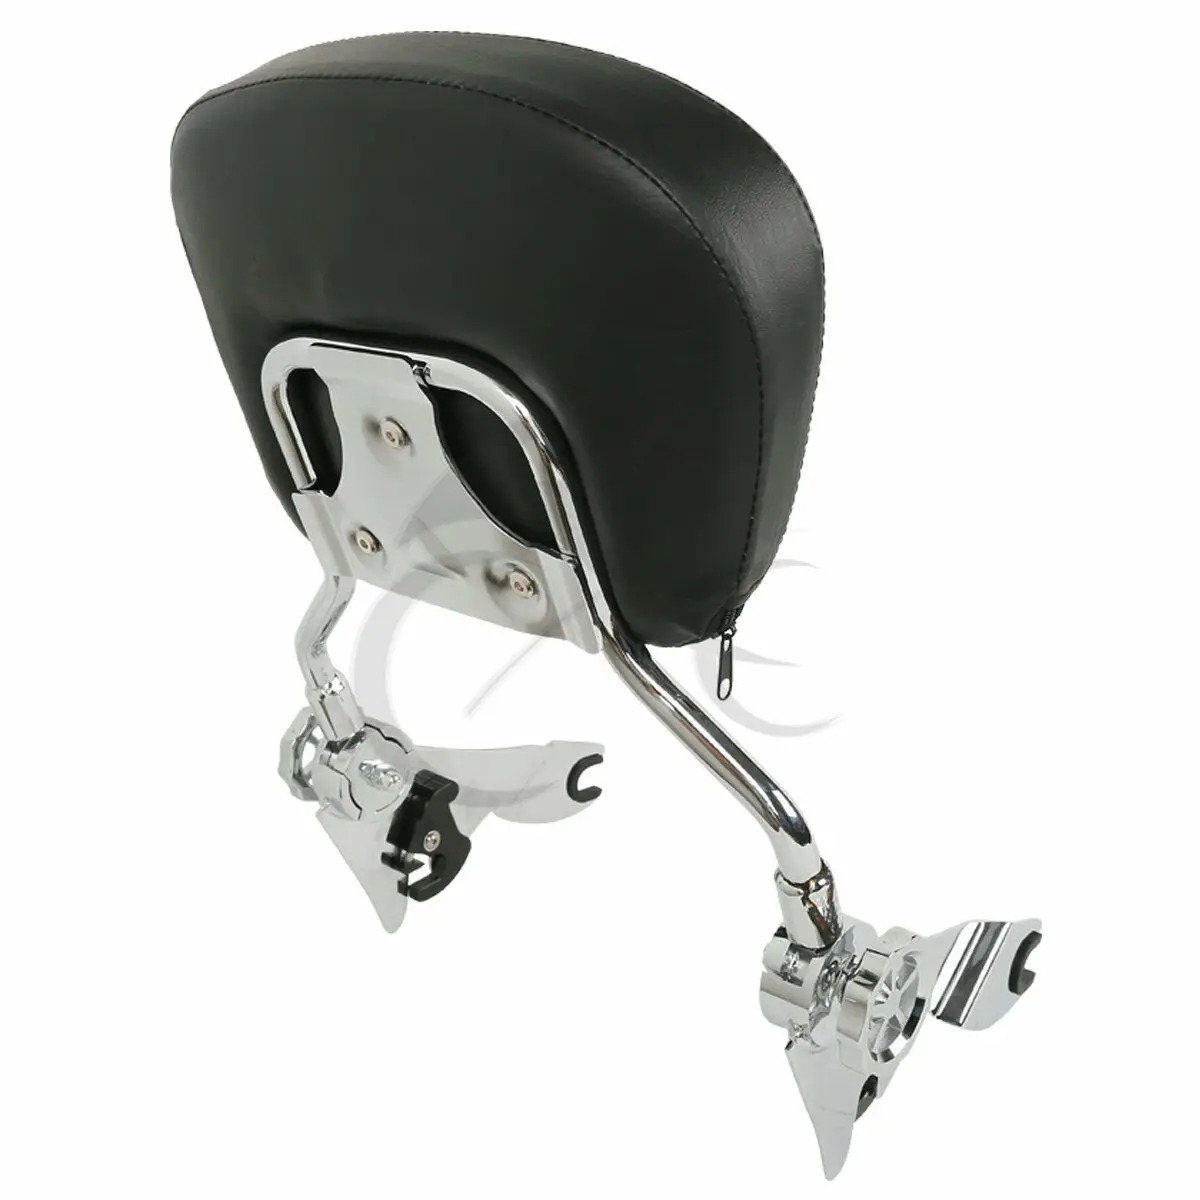 Мотоциклетная черная/хромированная регулируемая стойка для пассажира со спинкой W/Pad для Harley Touring модели уличное движение 2009 +